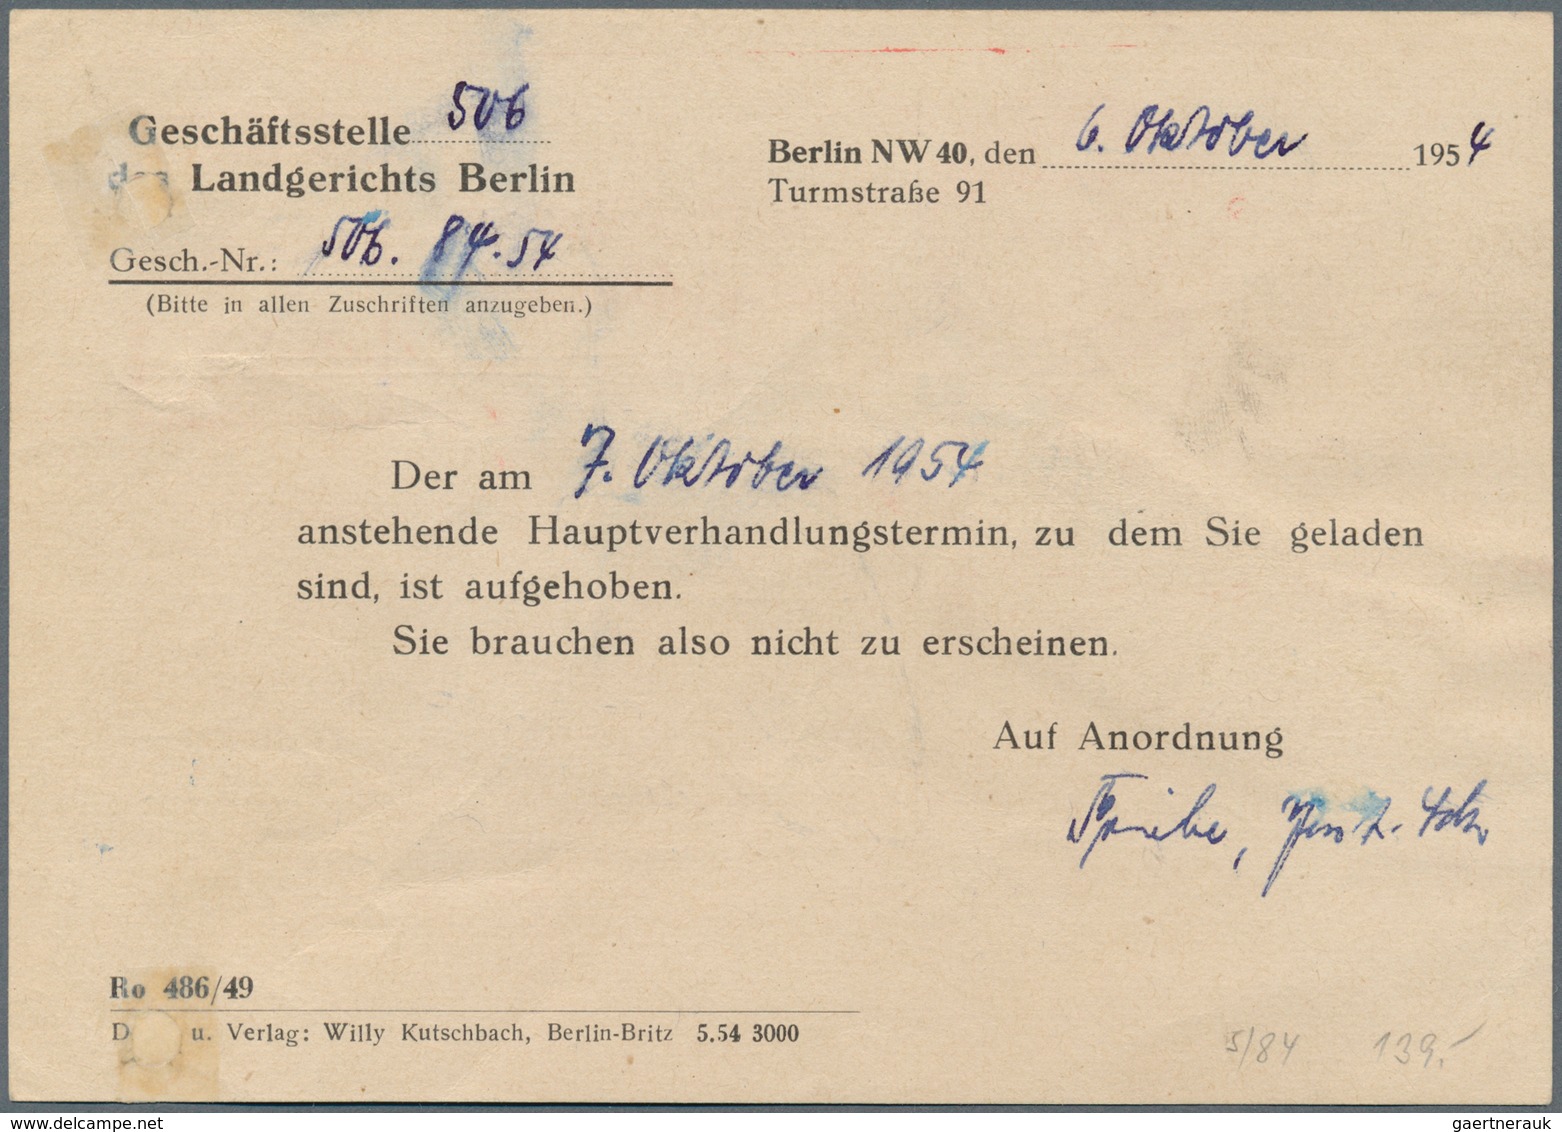 20637 Berlin - Postschnelldienst: 1954, Schnelldienstkarte Mit AFS =080= Justizbehörden Berlin Ab NW 40 6. - Covers & Documents